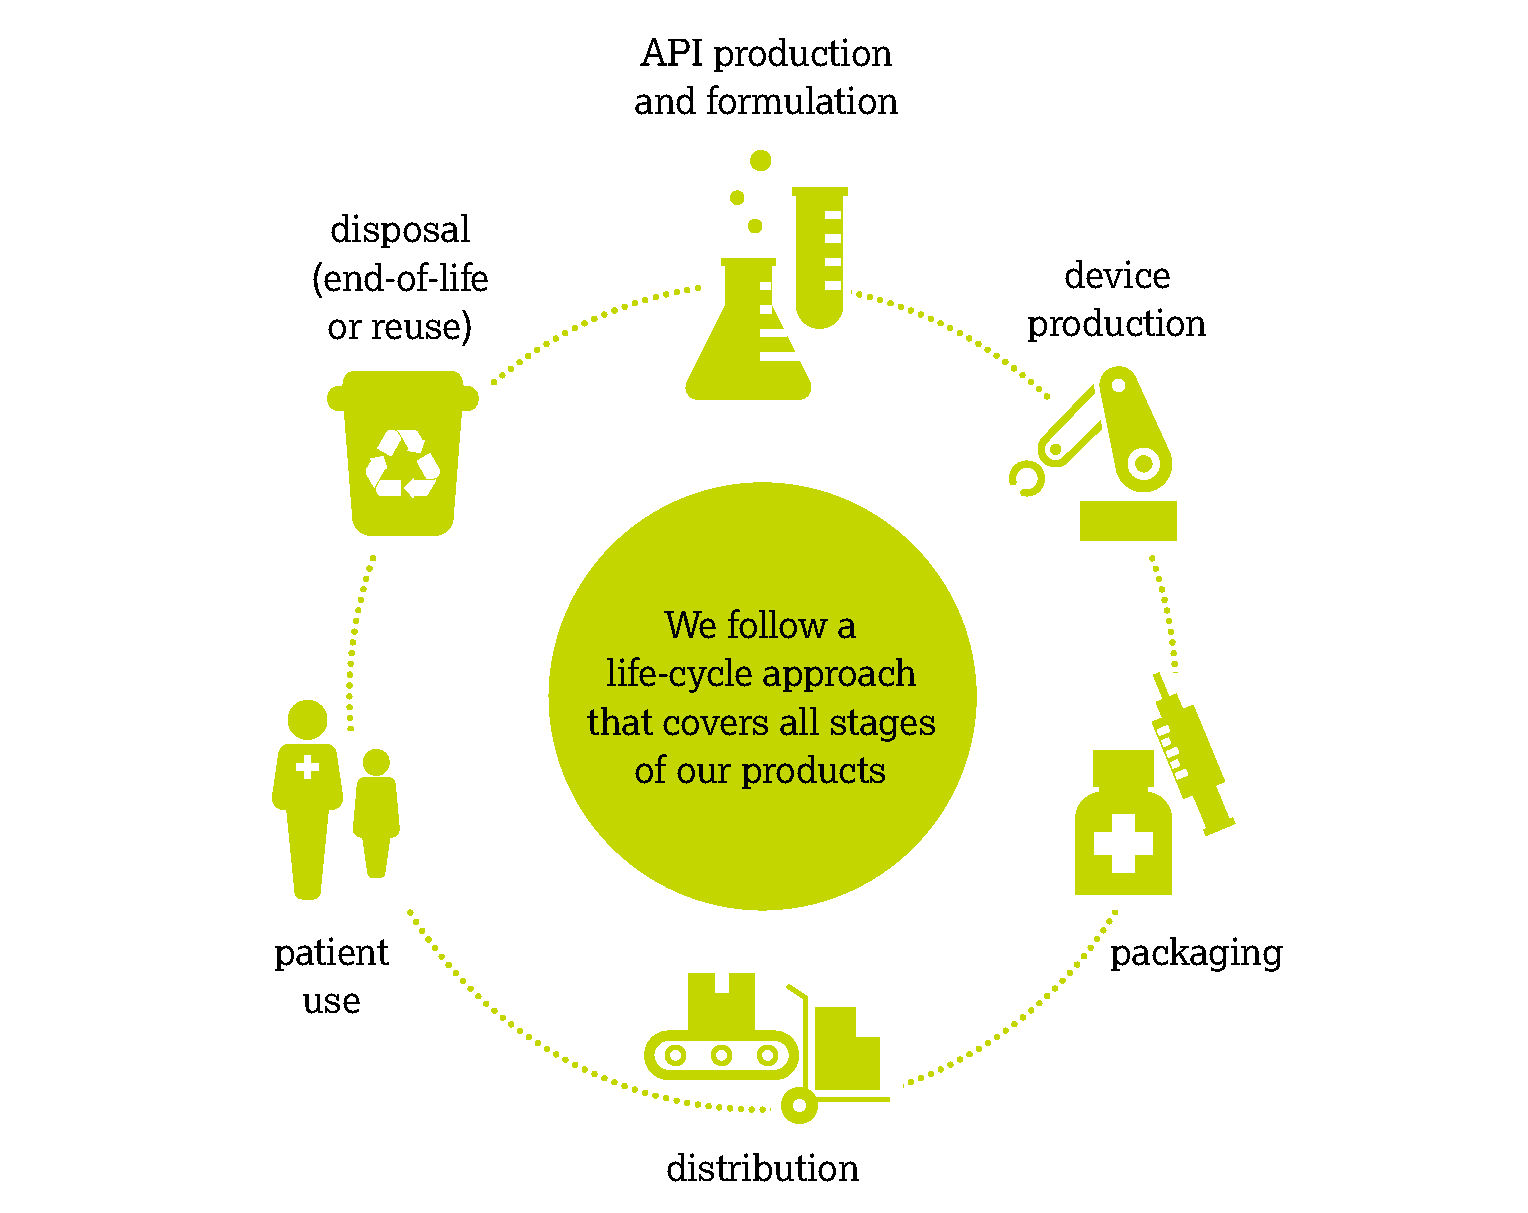 信息图展示了我们在以环境可持续发展的方式开发未来产品时所采用的前瞻性、循环思维